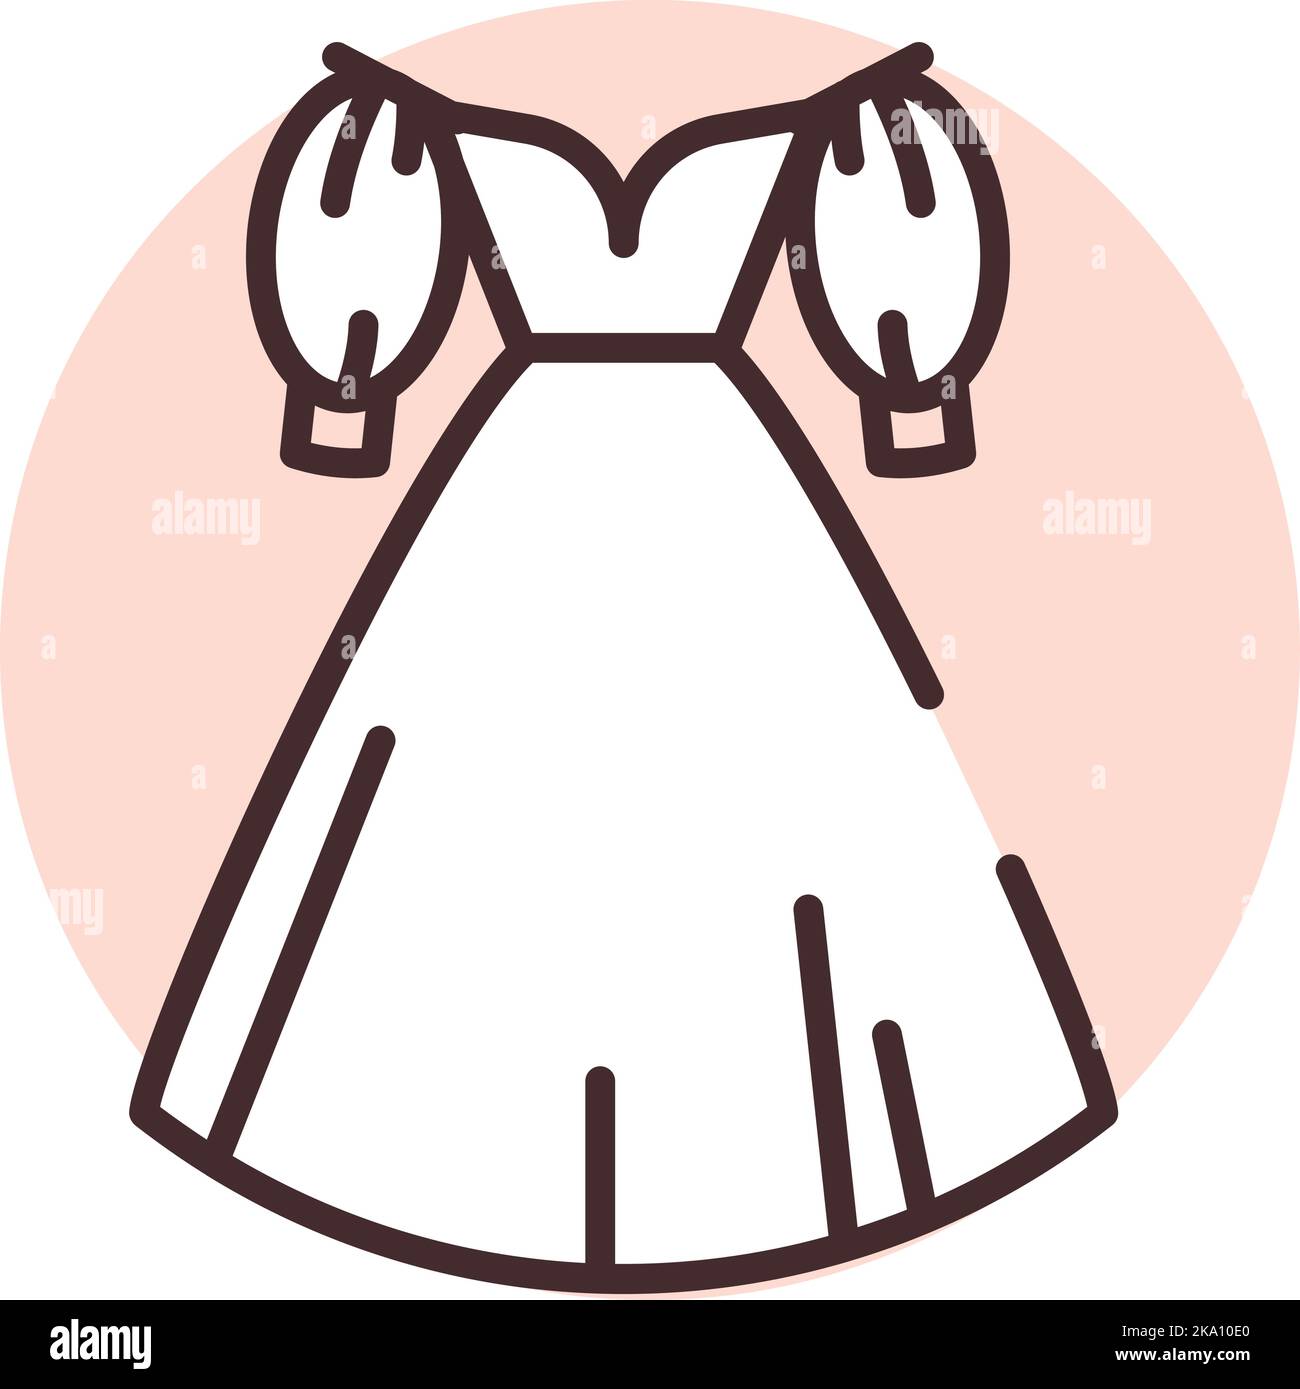 Event weißes Hochzeitskleid, Illustration oder Symbol, Vektor auf weißem Hintergrund. Stock Vektor